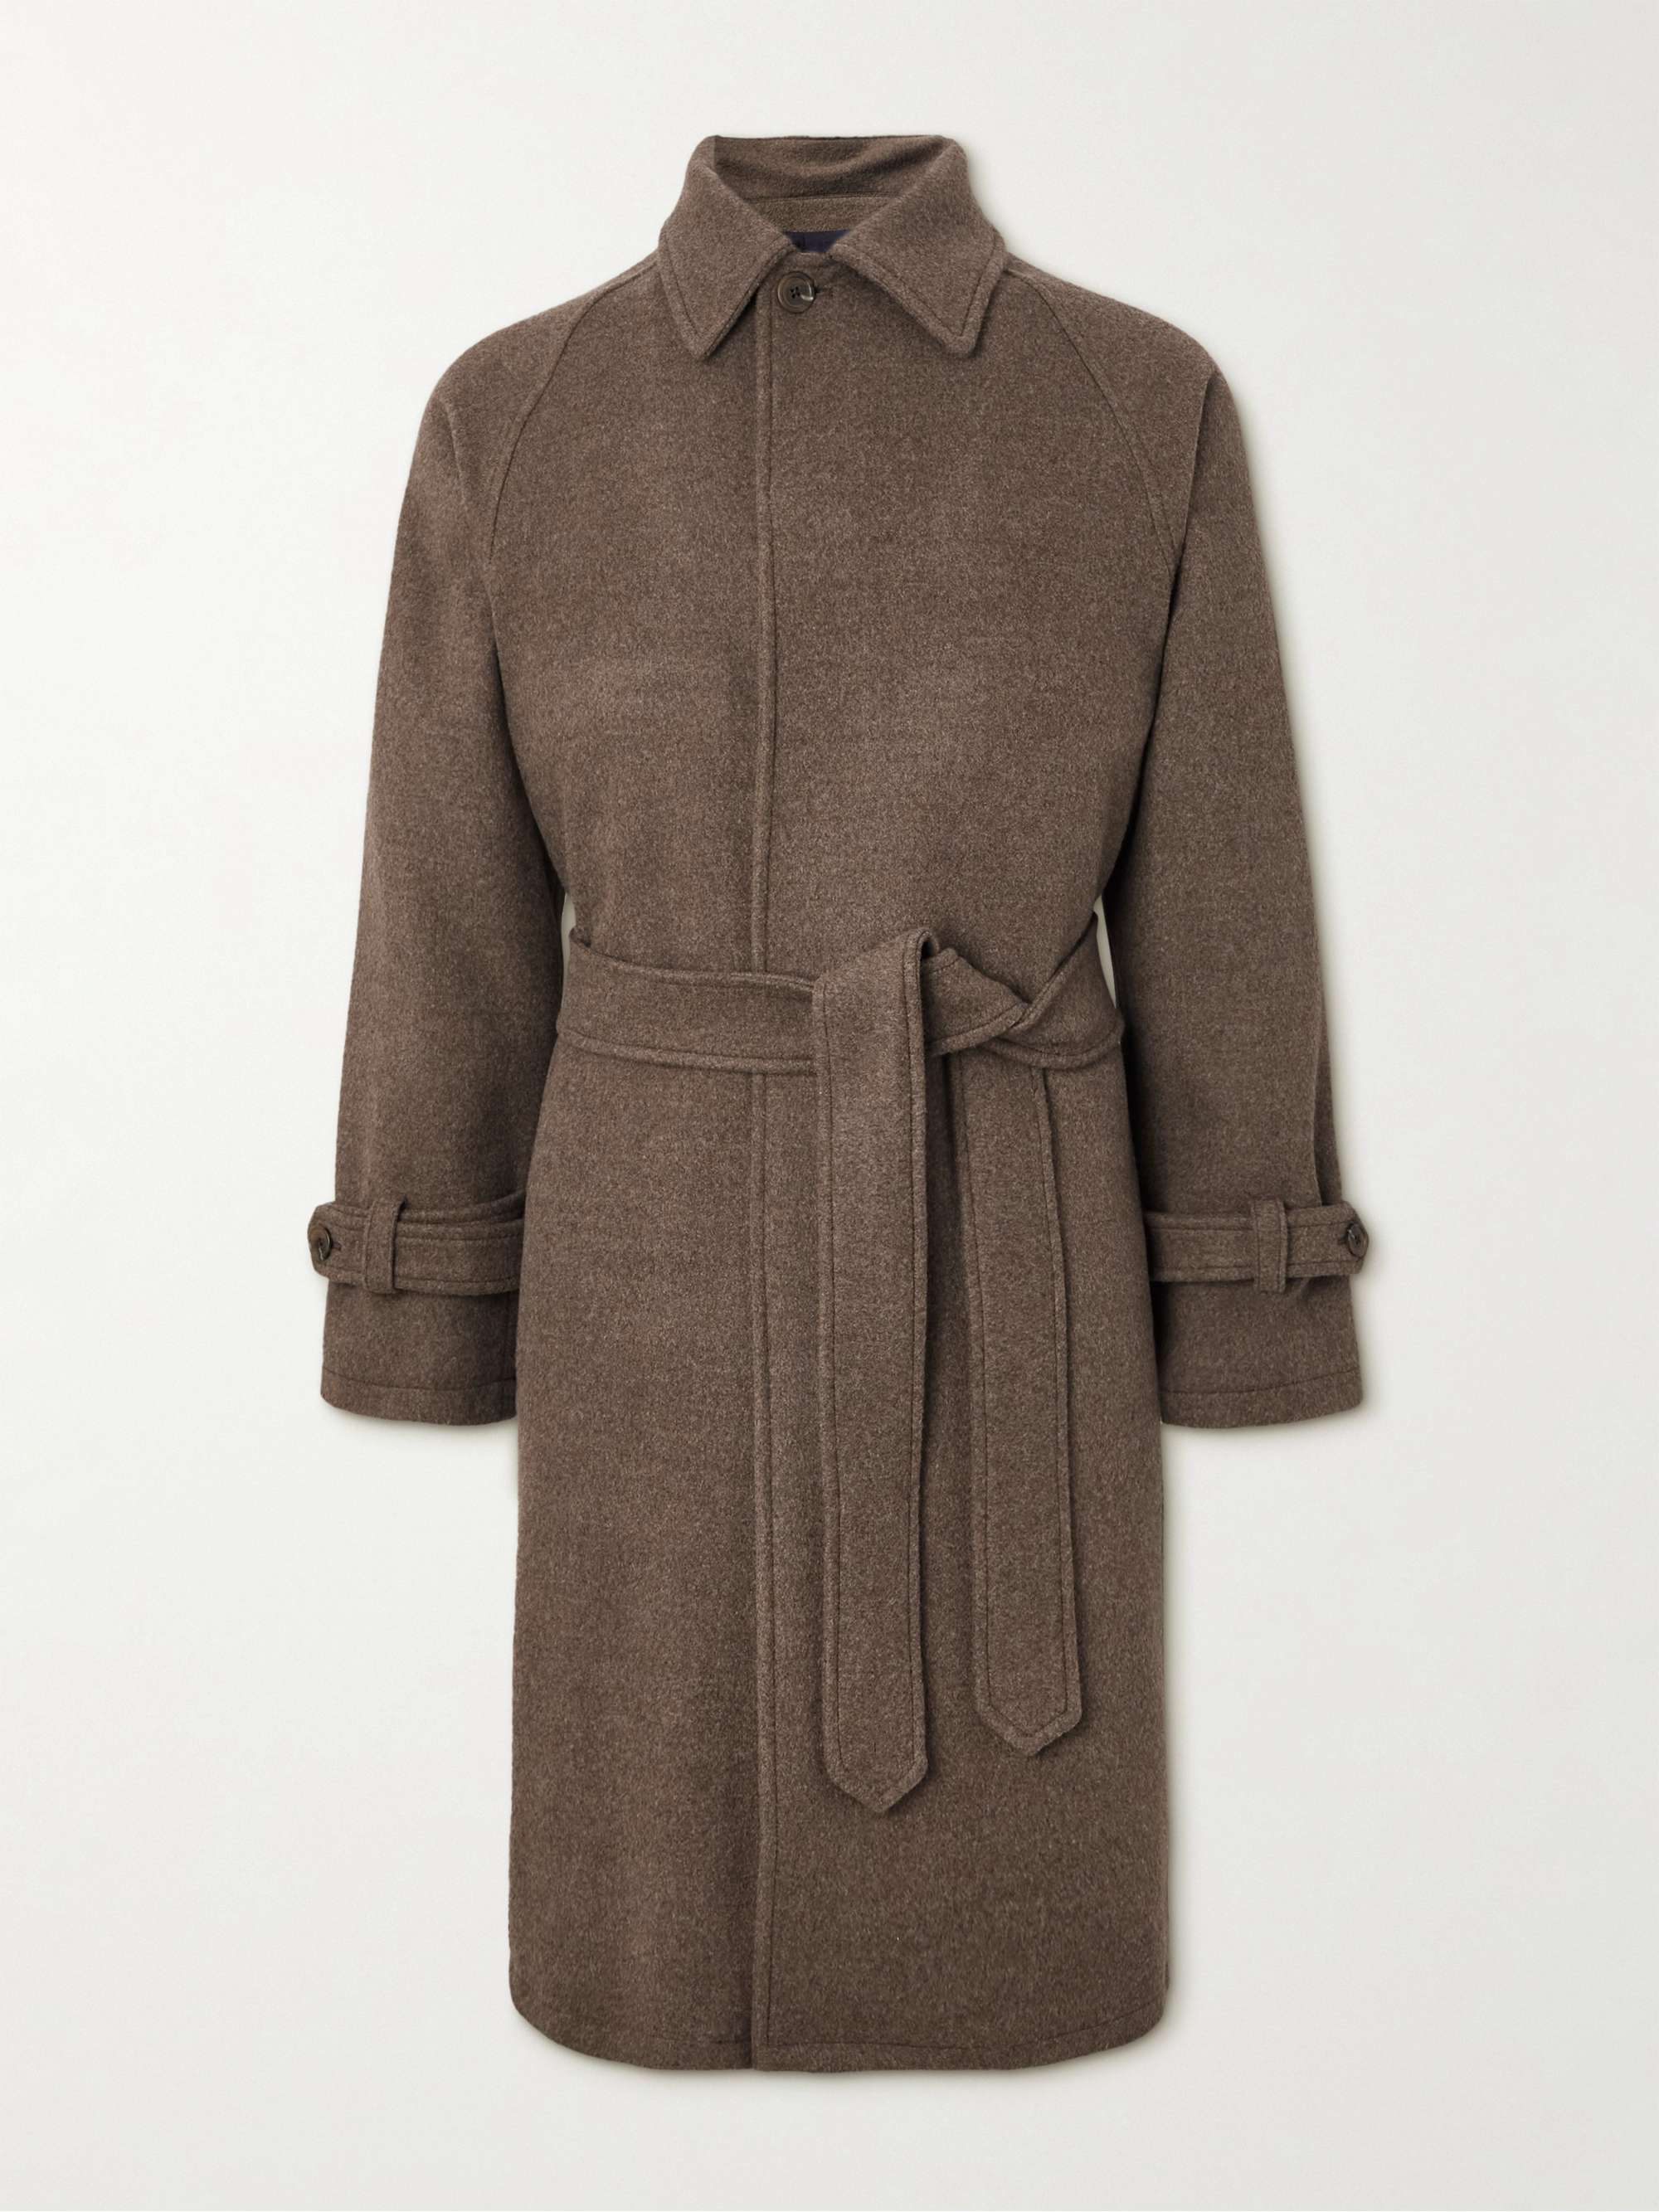 STÒFFA Belted Wool-Felt Coat